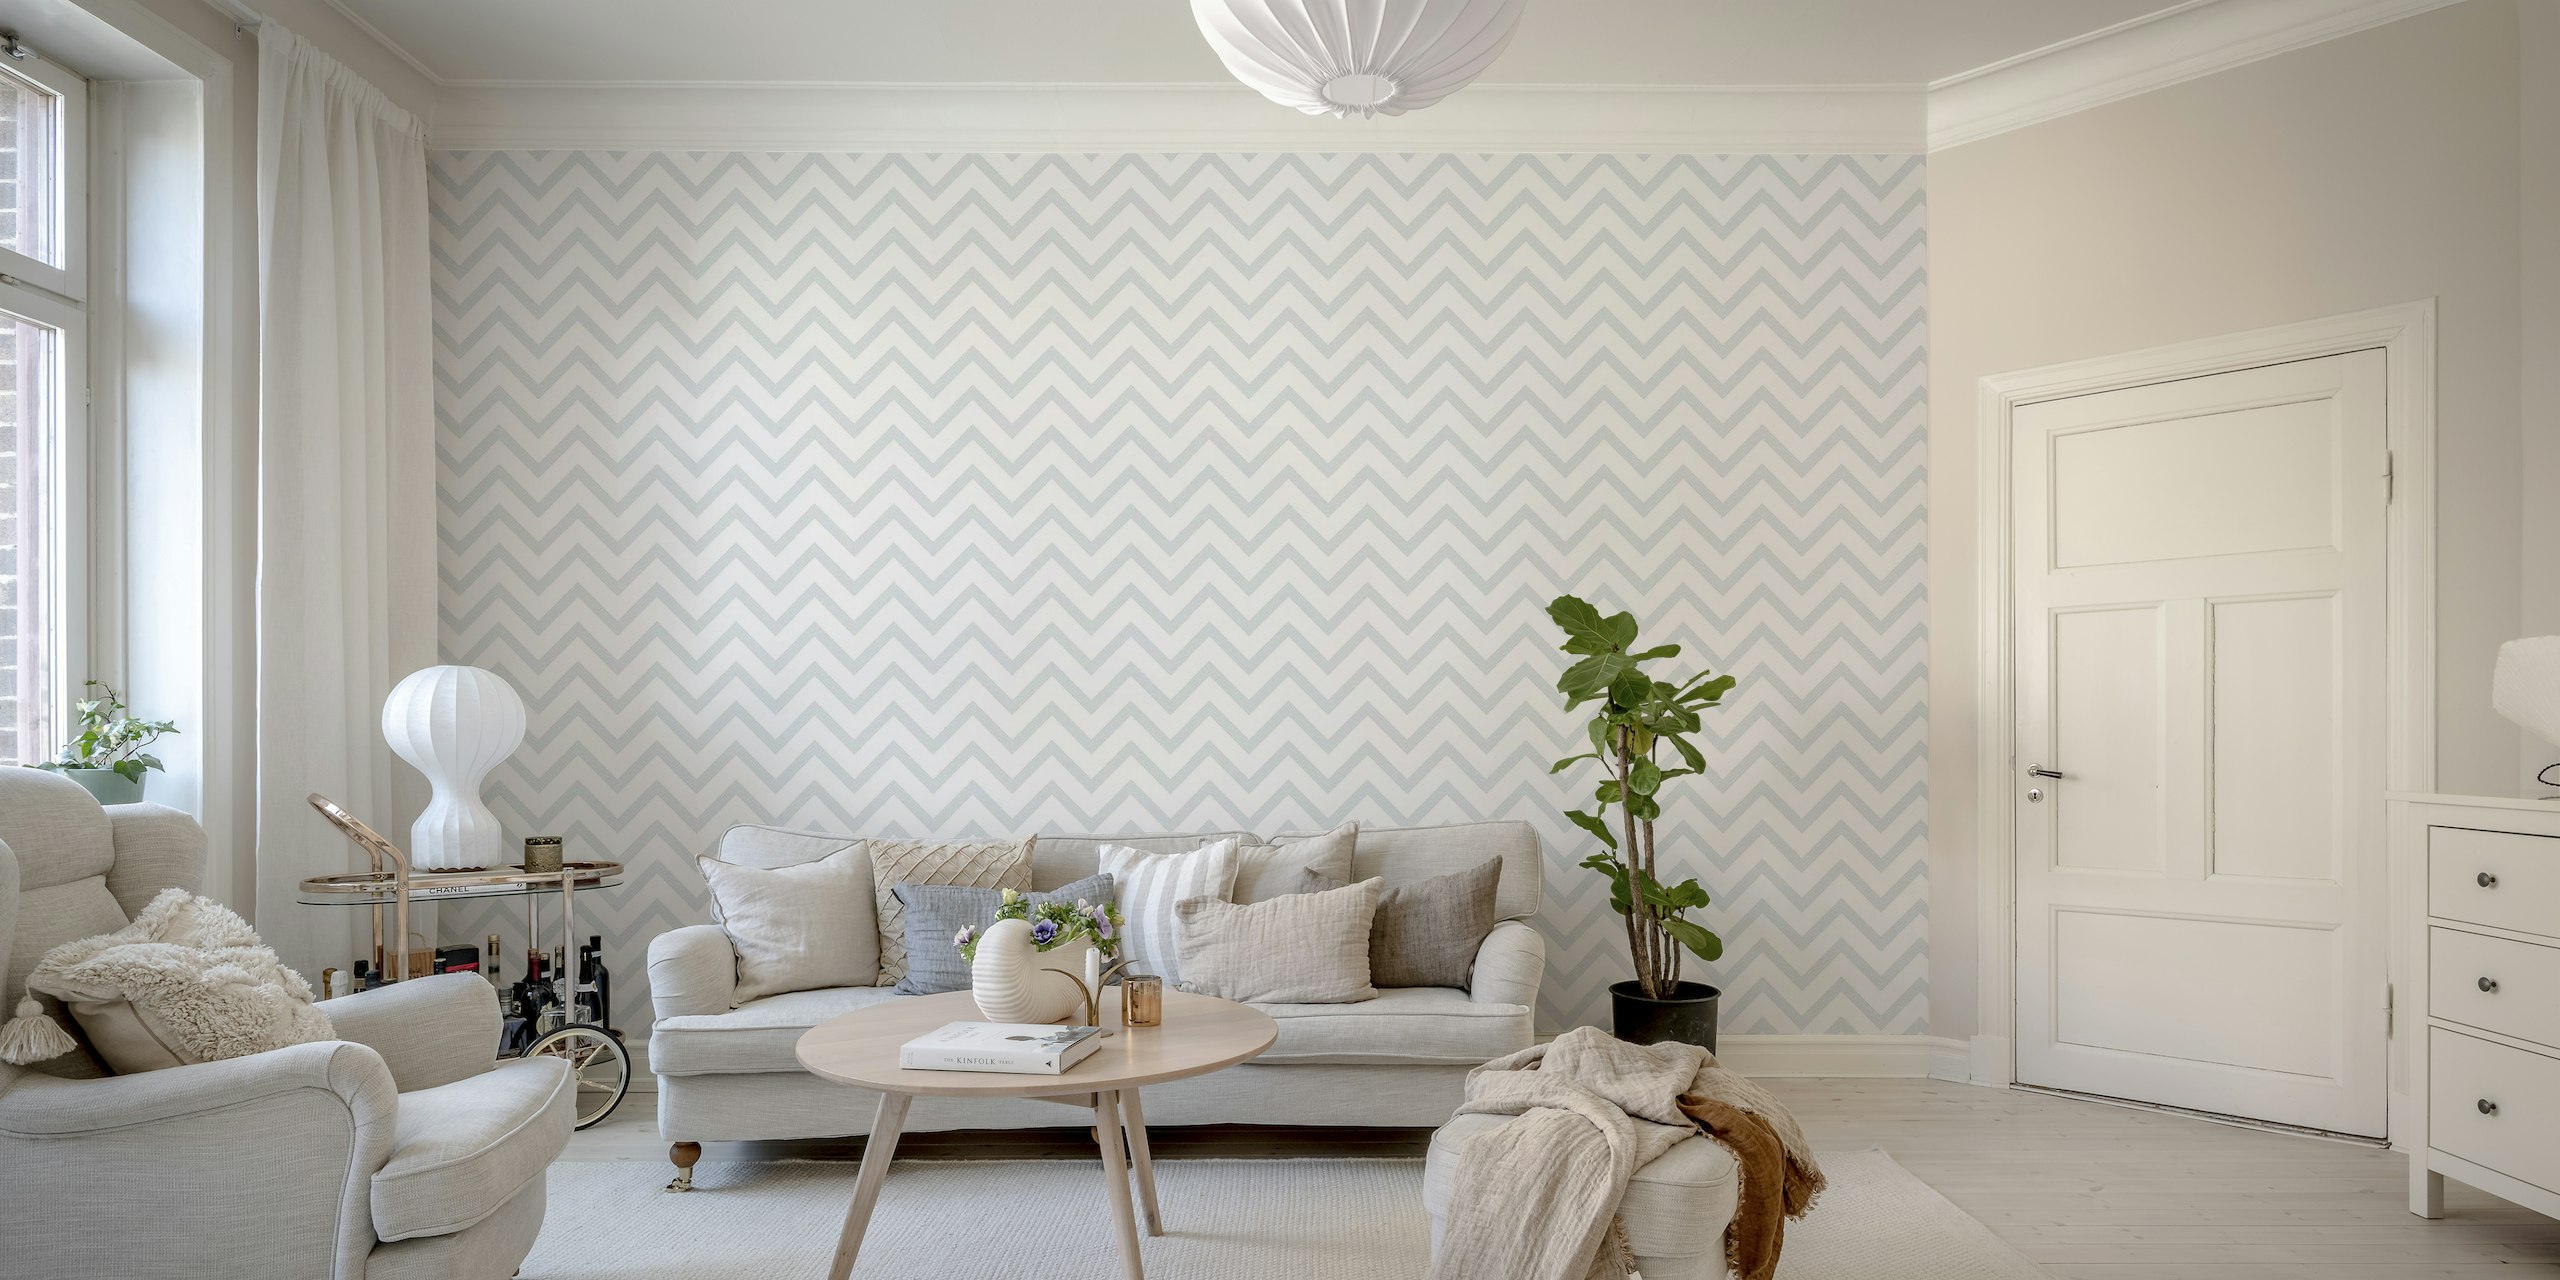 Elegante mural de pared con estampado de chevrones grises para una decoración interior sofisticada